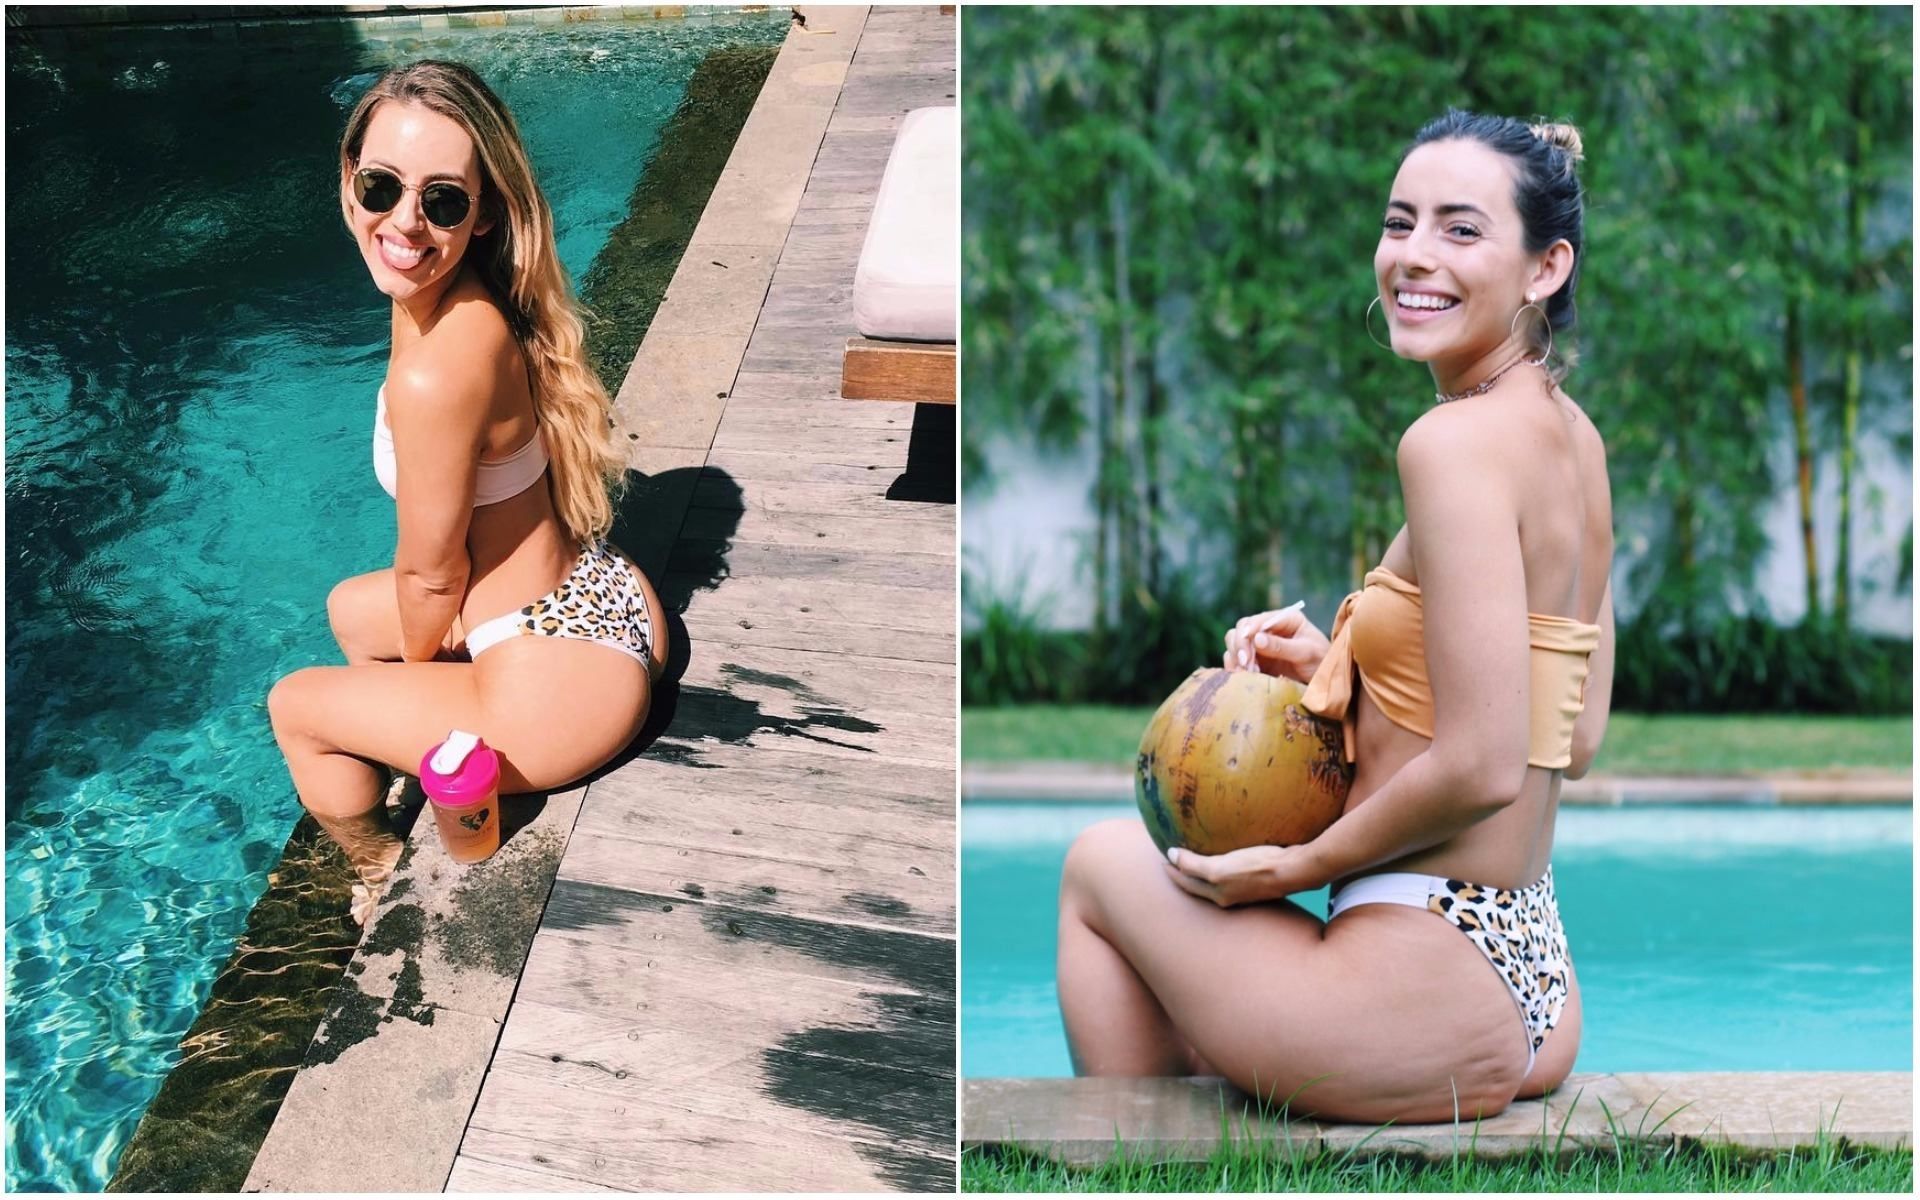 Як нас обманюють в Instagram: фітнес-модель чесно показала свій целюліт на сідницях 